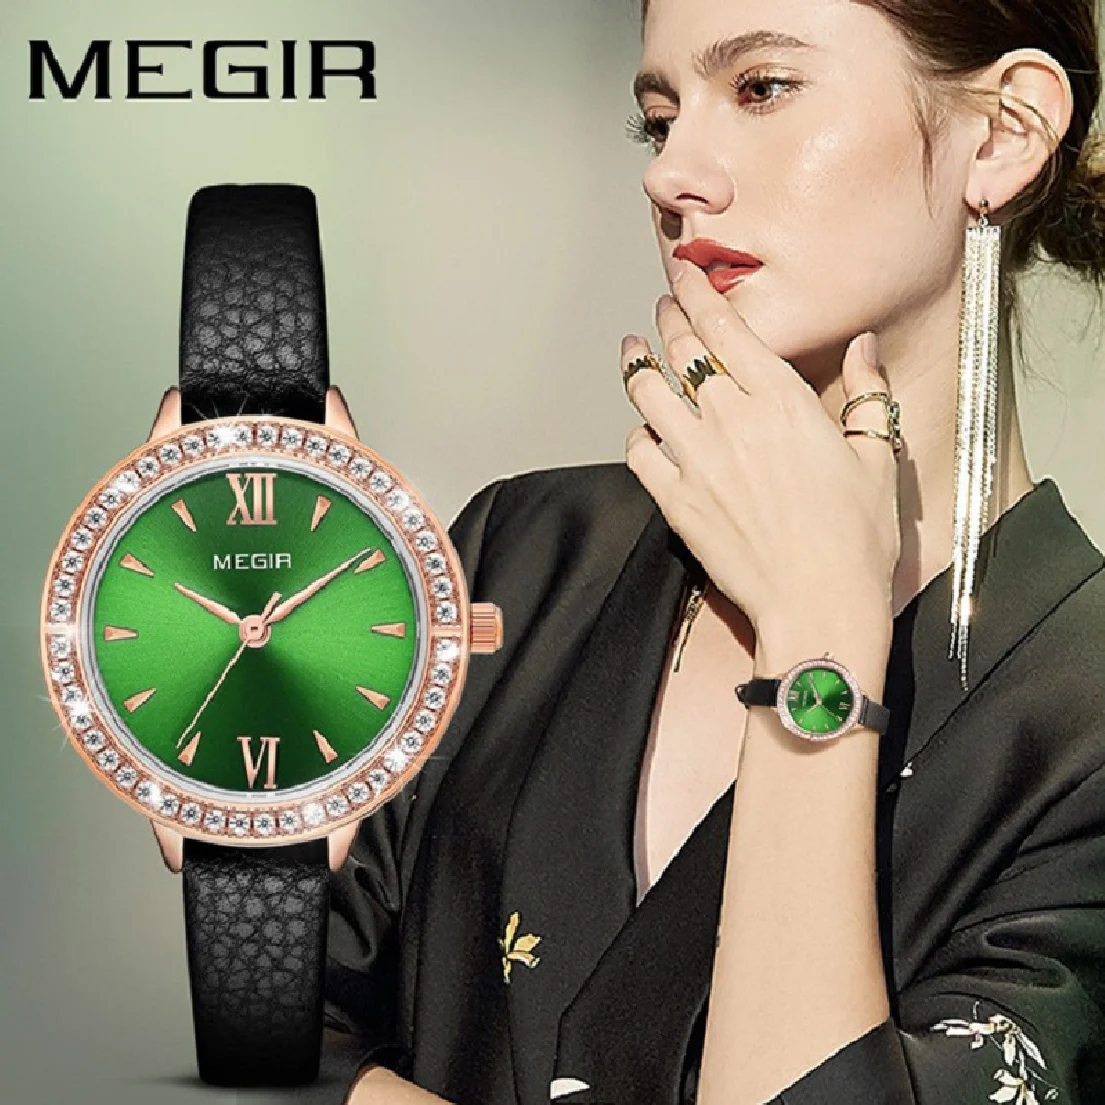 

Часы MEGIR женские с кожаным ремешком, оригинальные модные наручные, с зеленым циферблатом, со стразами